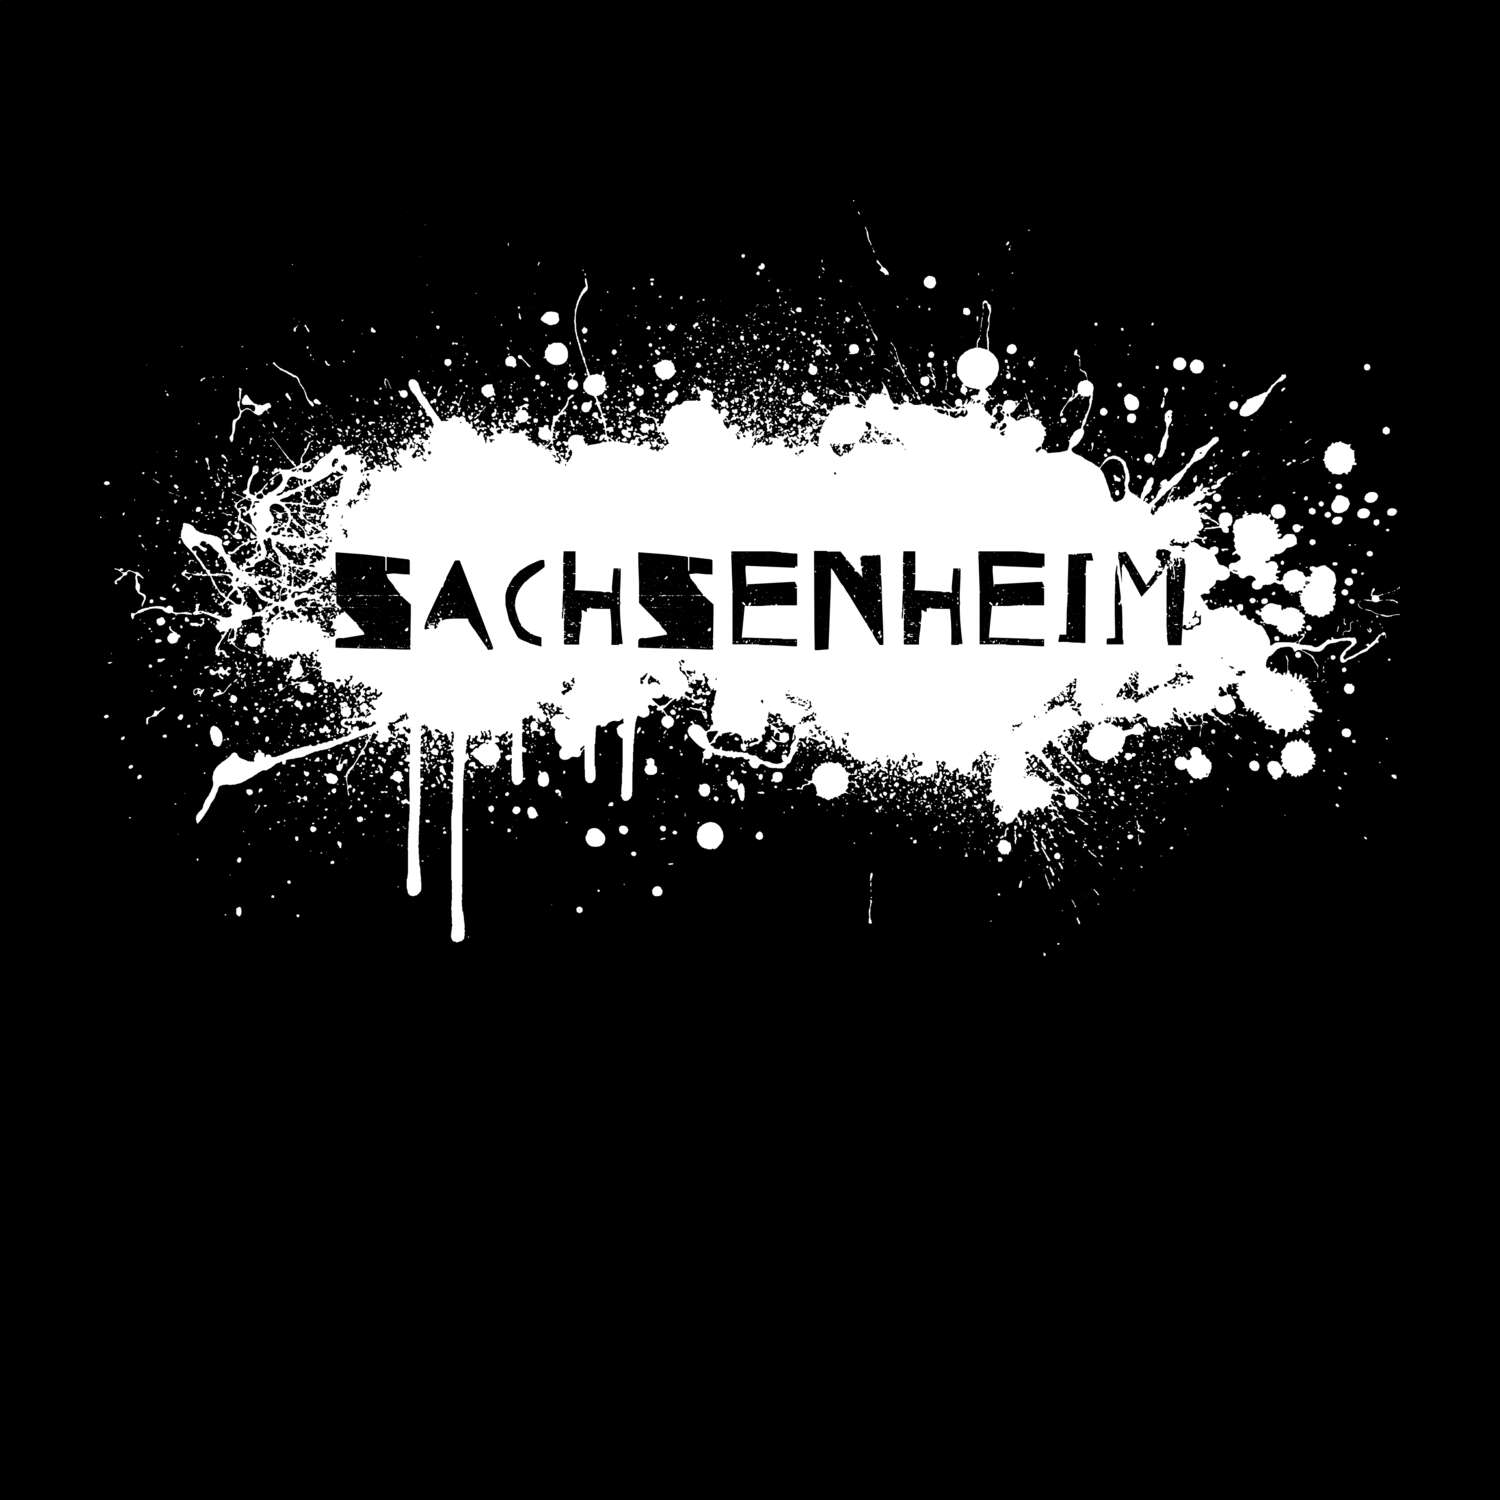 Sachsenheim T-Shirt »Paint Splash Punk«